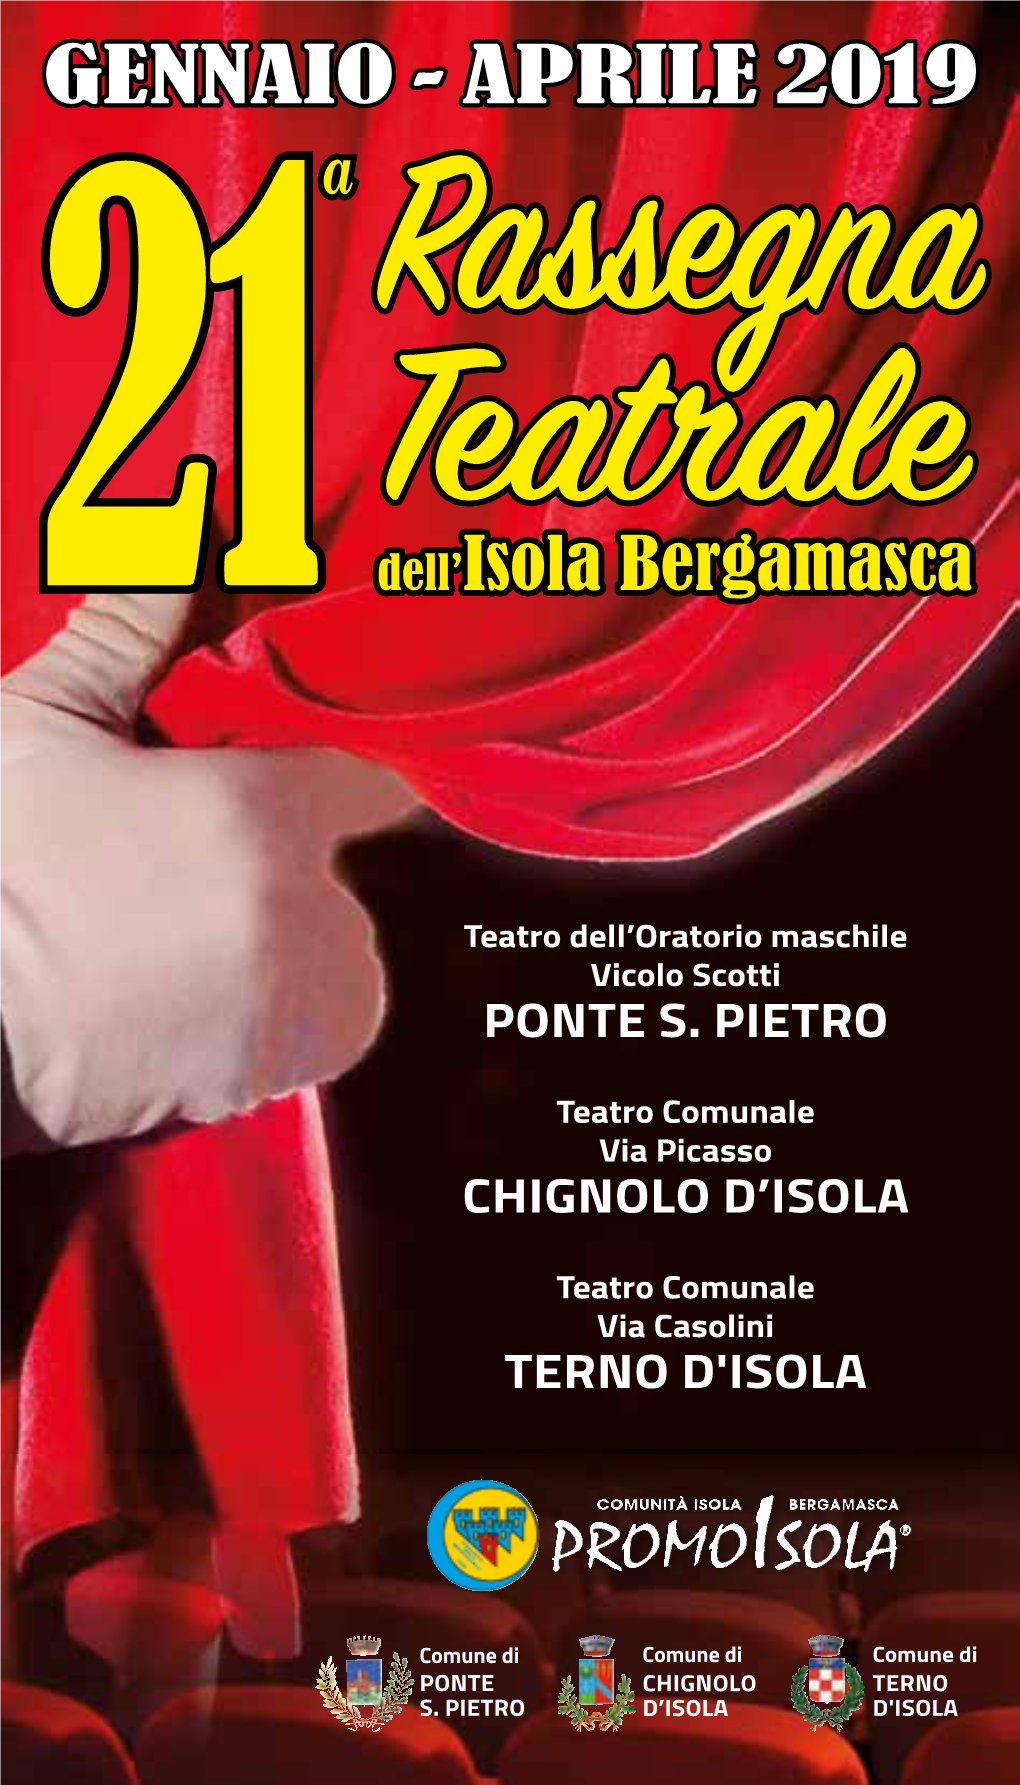 GENNAIO - APRILE 2019 a Rassegna 21 Tea Dell’Isola Bergamasca Ale